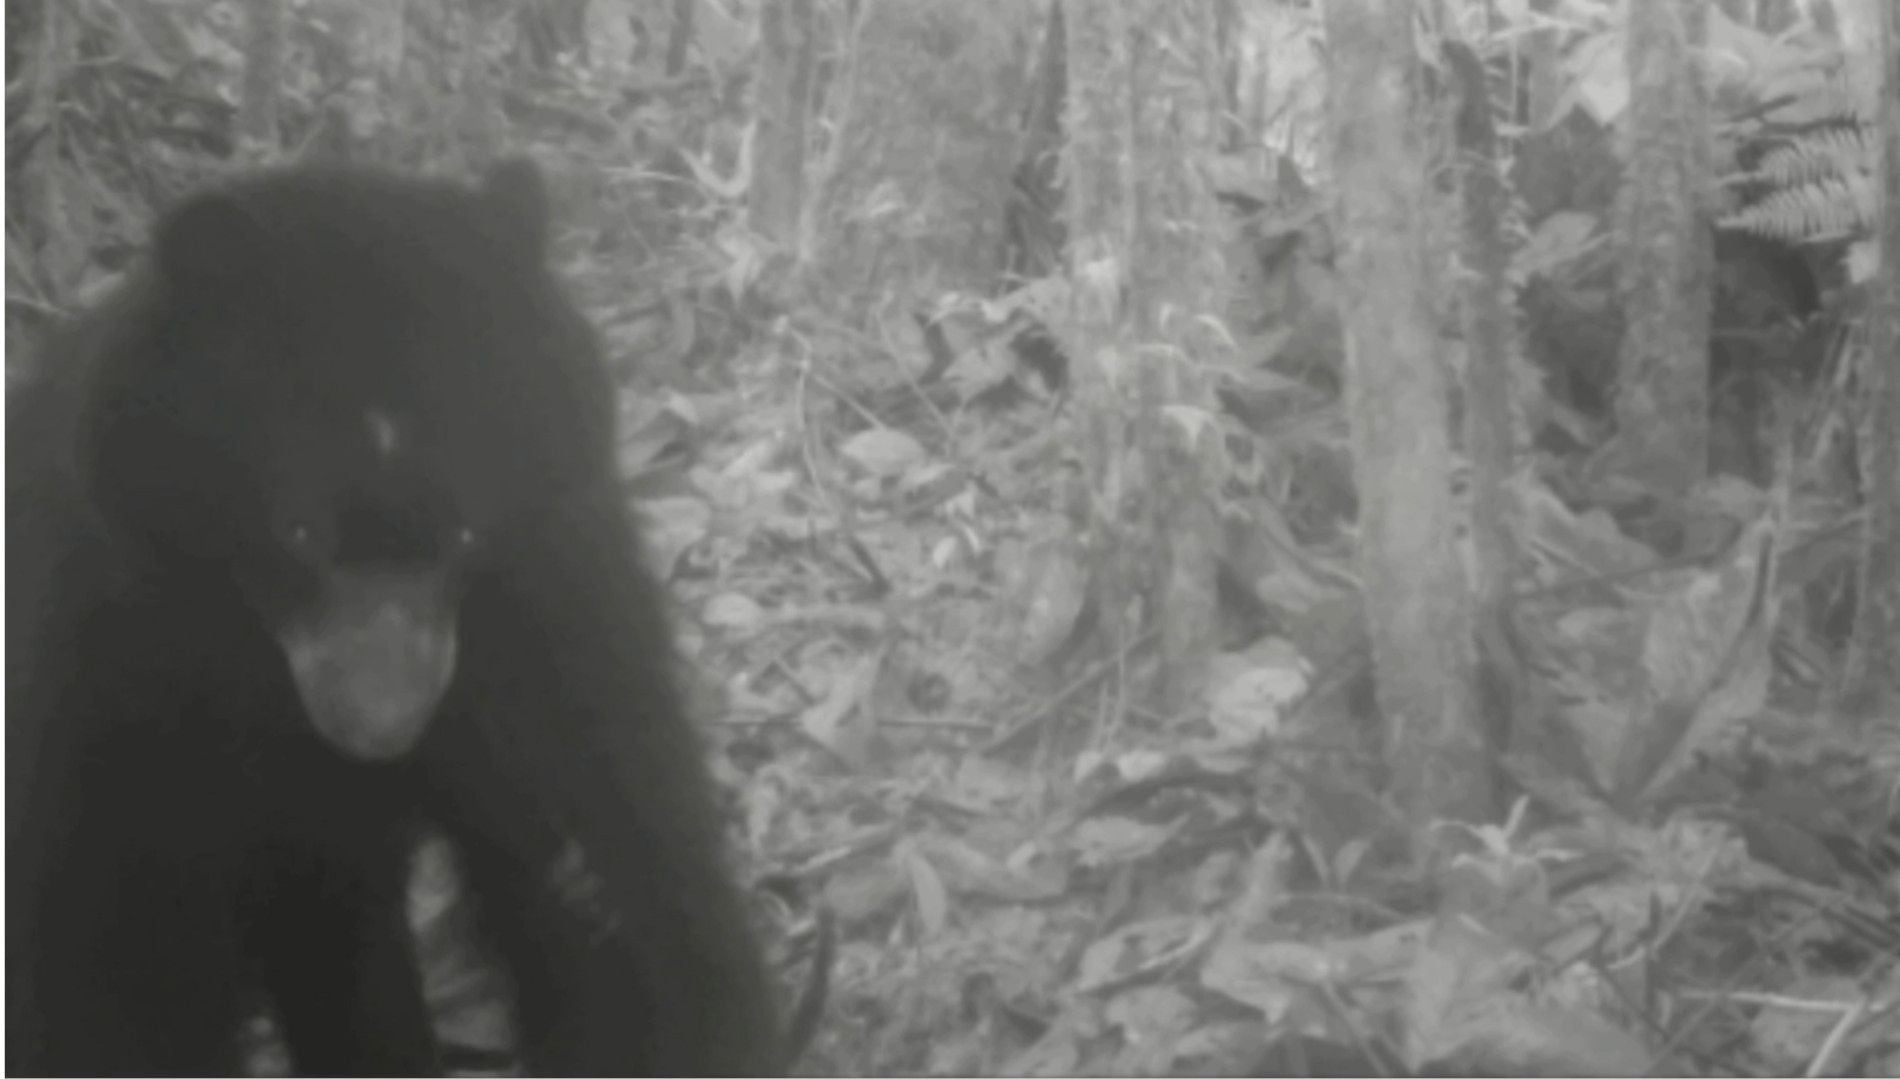 El oso de anteojos fue detectado en el Parque Nacional Natural de Paramillo. Foto: Instituto Humboldt